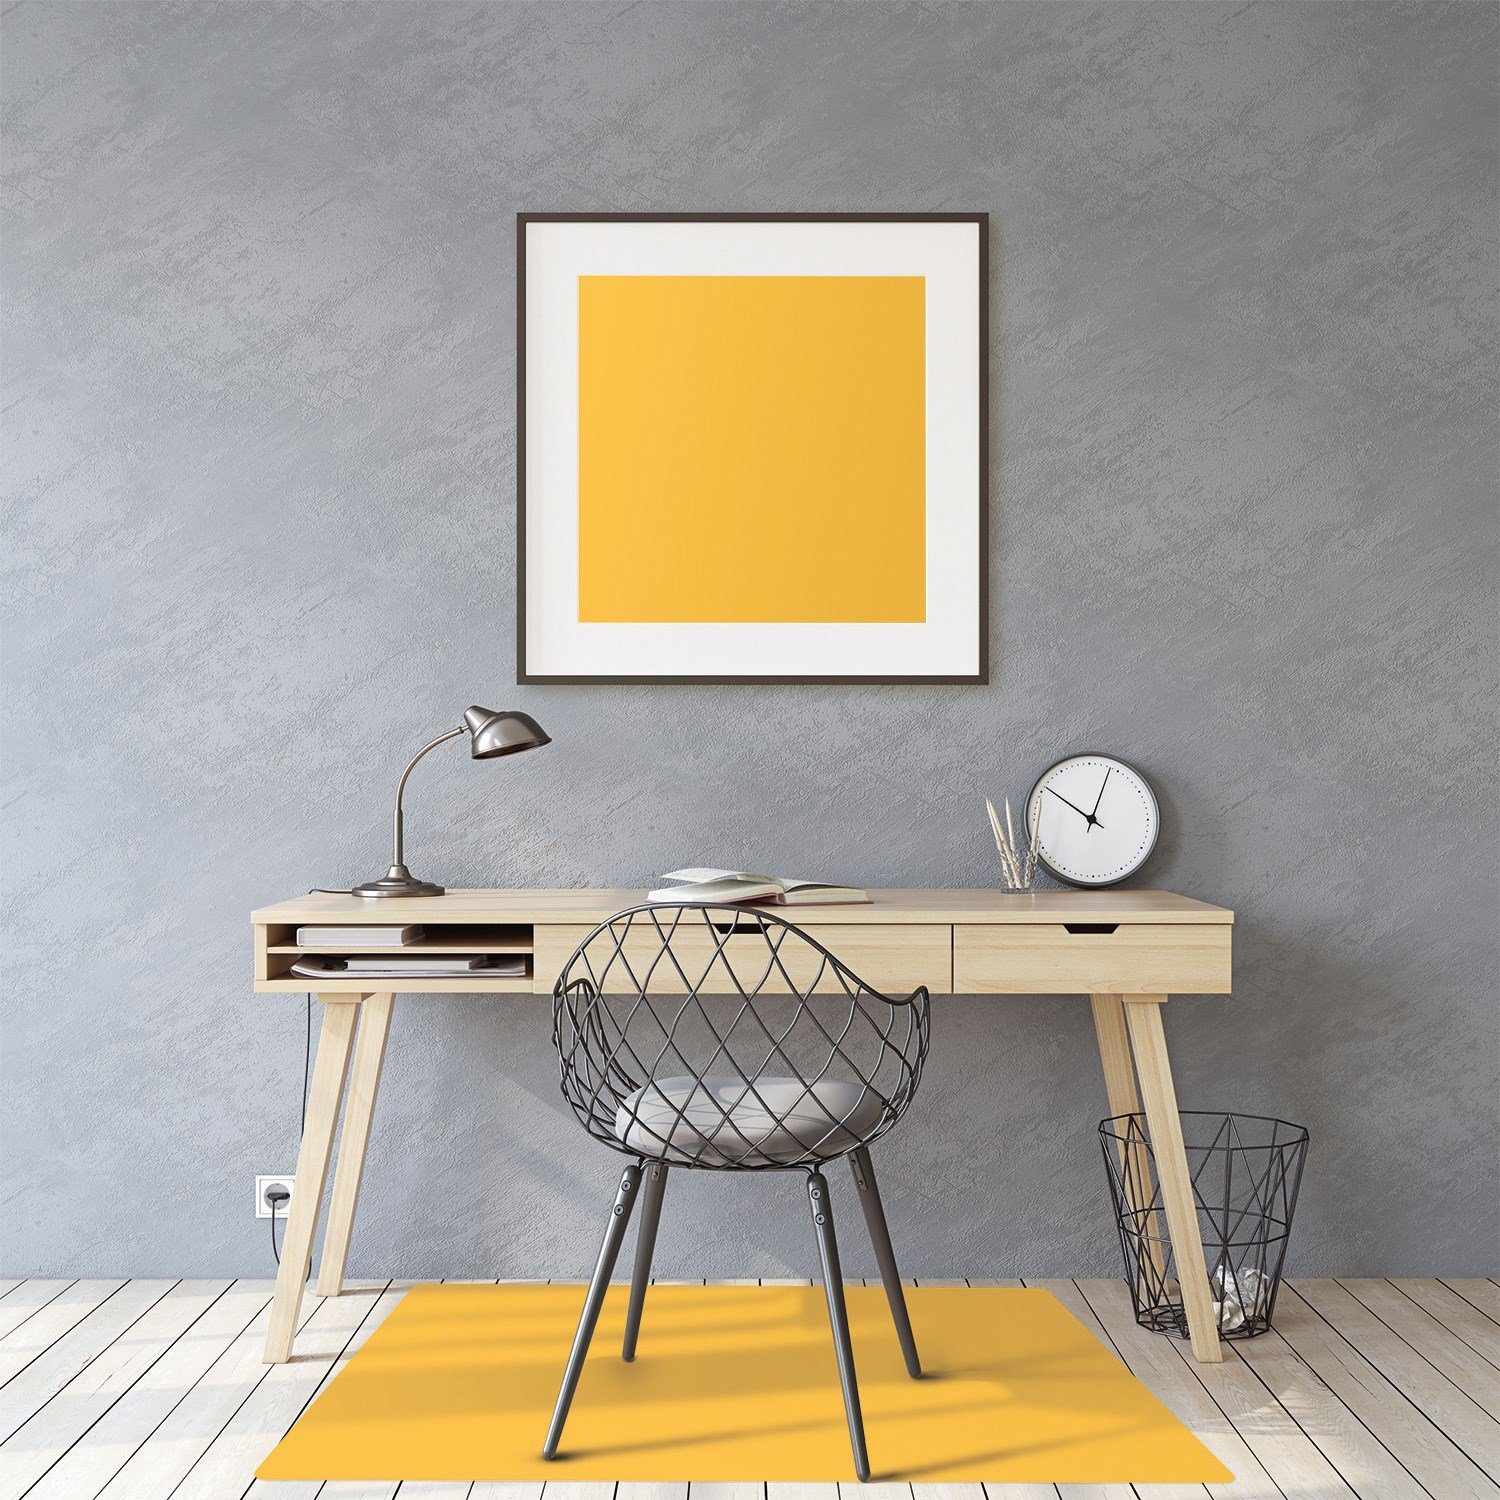 Tulup Bodenschutzmatte Stuhlunterlage Bürostuhlunterlage Bodenmatte Gelben Bürostühle 100 cm Bürostuhlunterlage Stuhlunterlage, 70 x cm